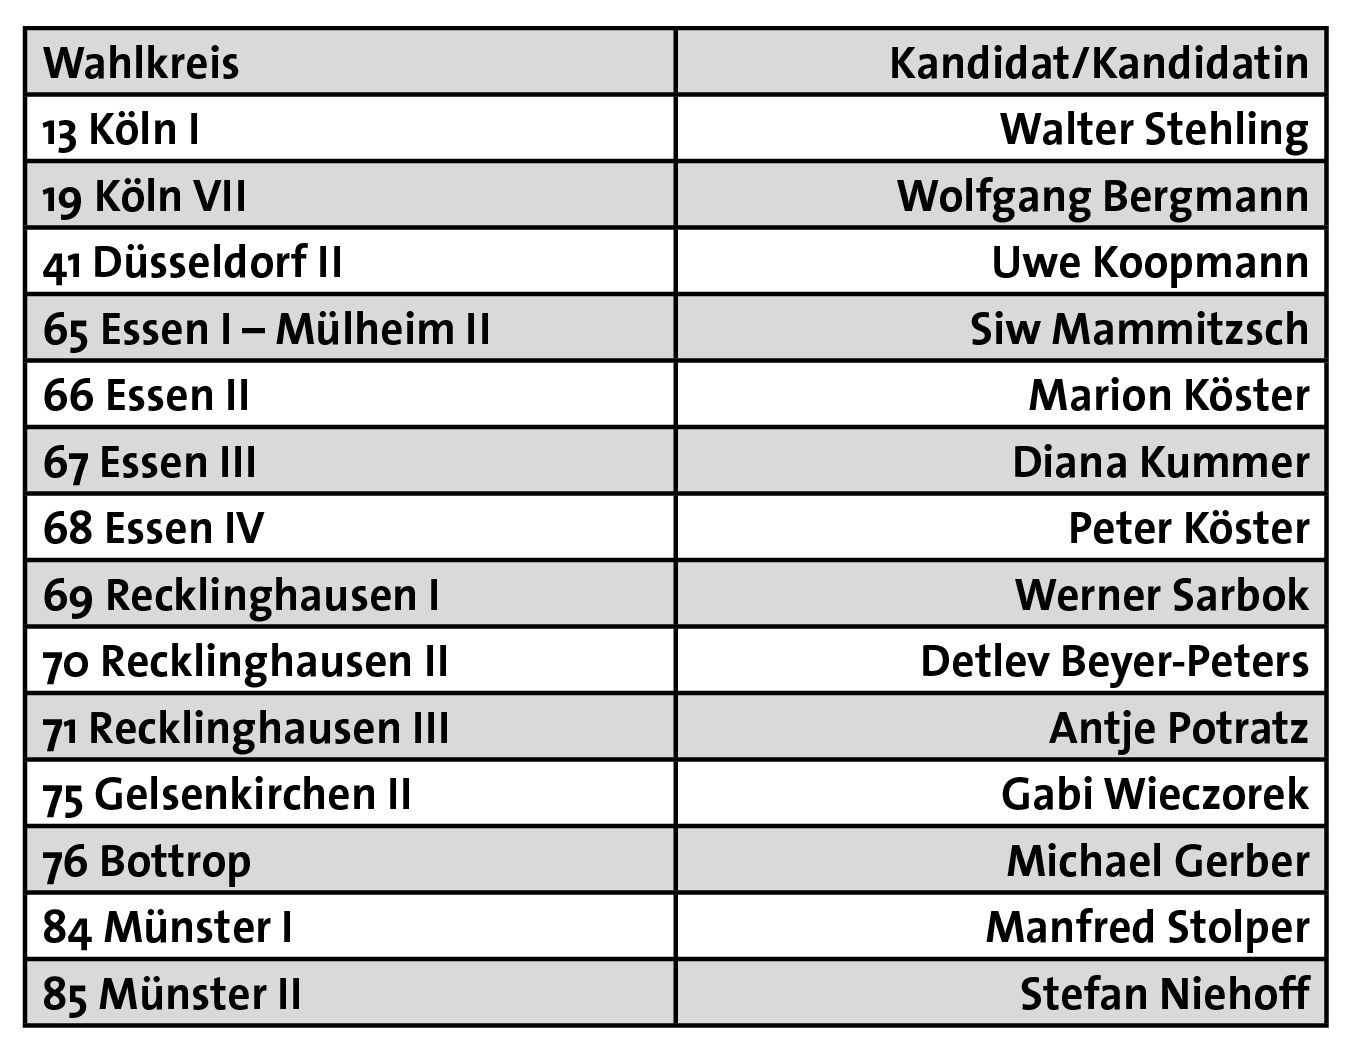 DKP-Direktkandidaten zur Landtagswahl in Nordrhein-Westfalen